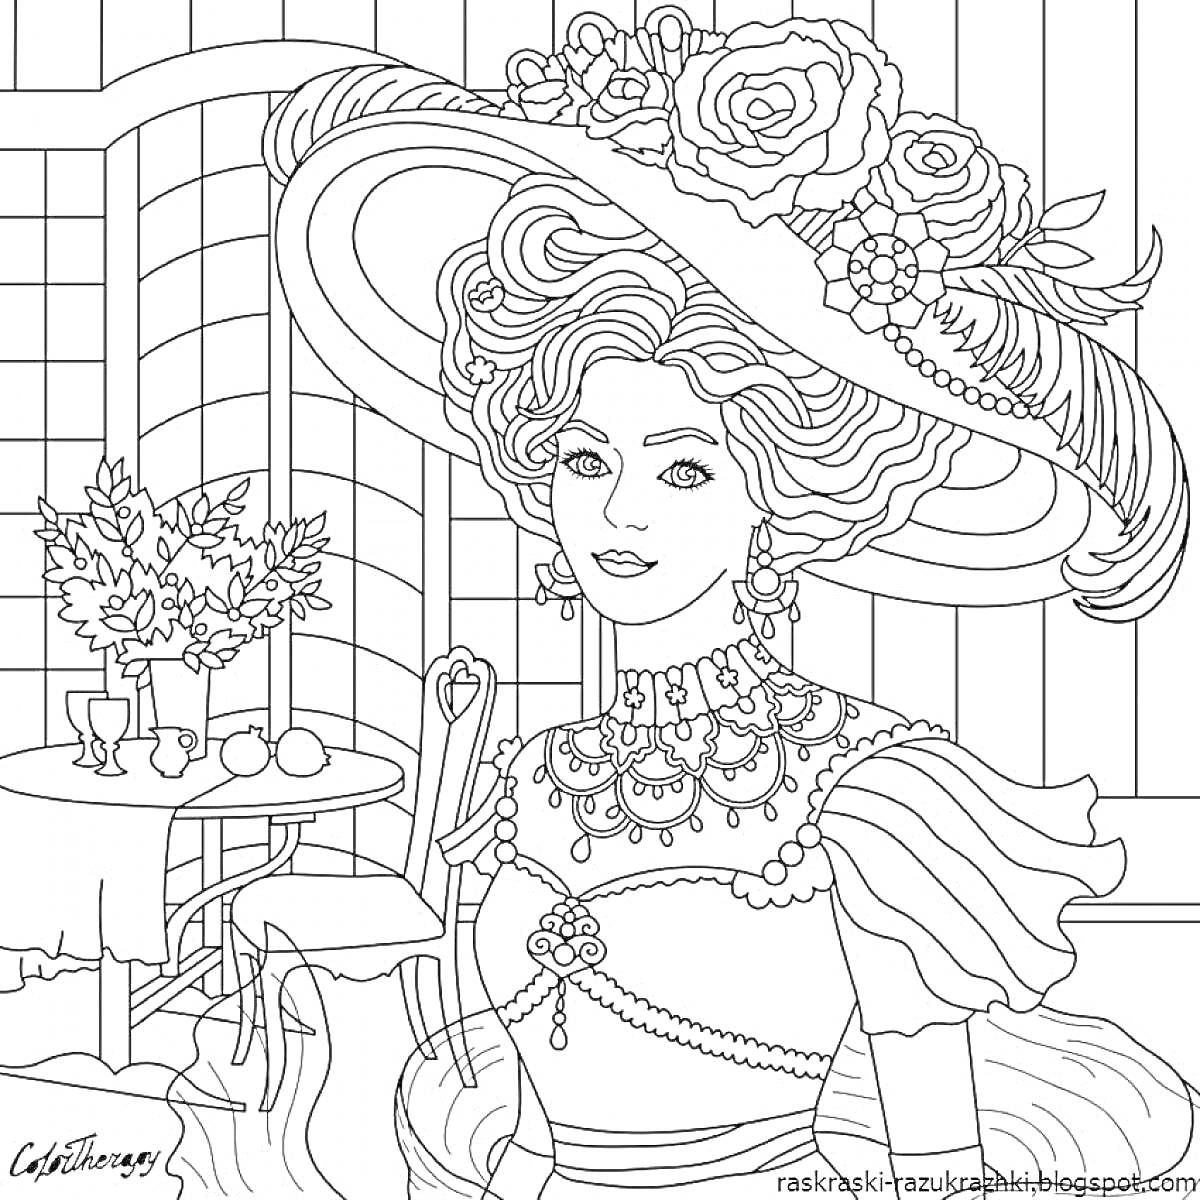 Женщина в роскошной шляпе с цветами на террасе, рядом стол с цветами и фруктами